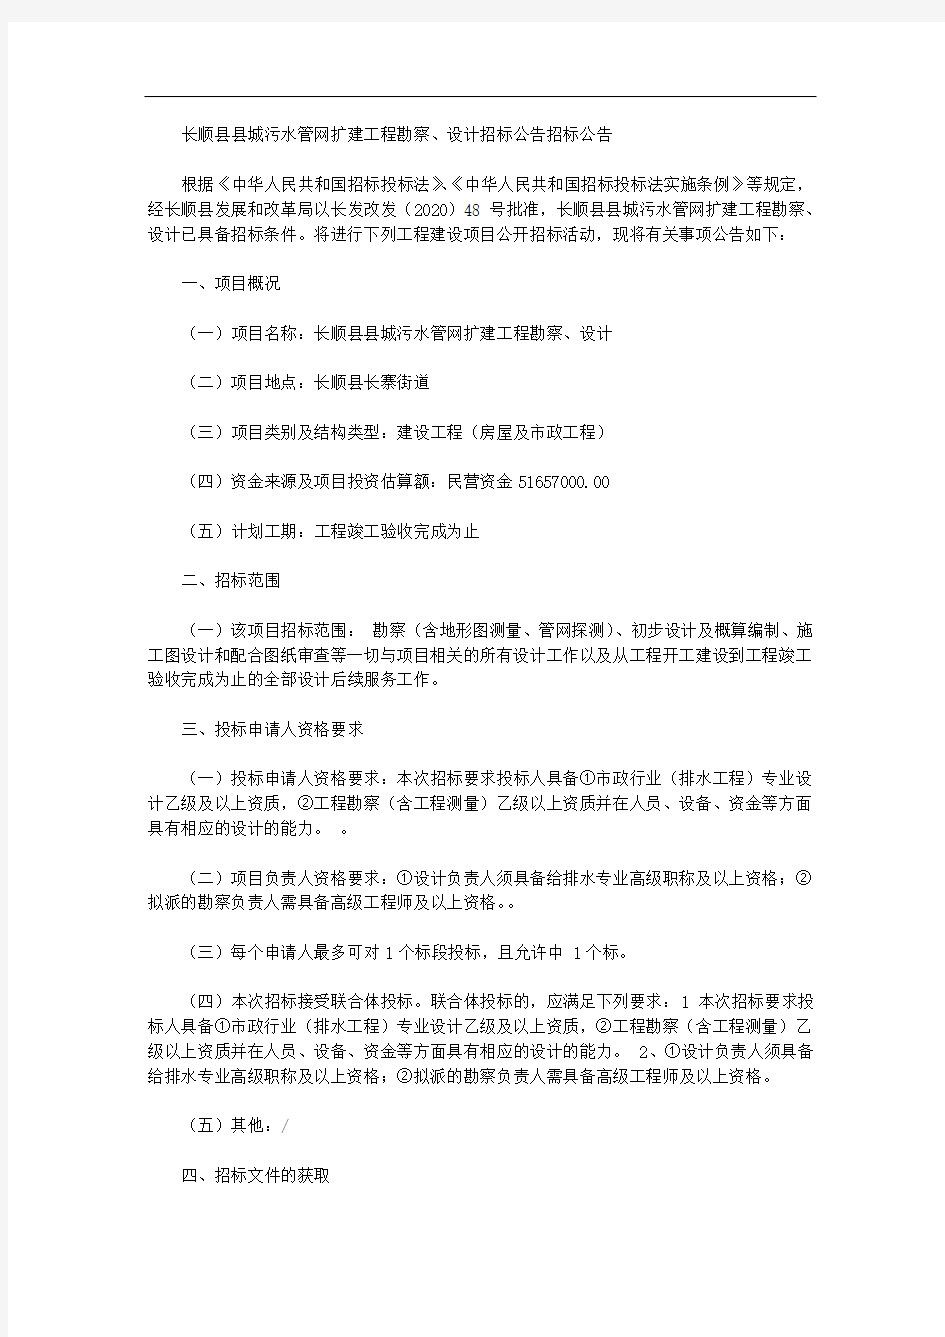 长顺县县城污水管网扩建工程勘察、设计招标公告招标公告